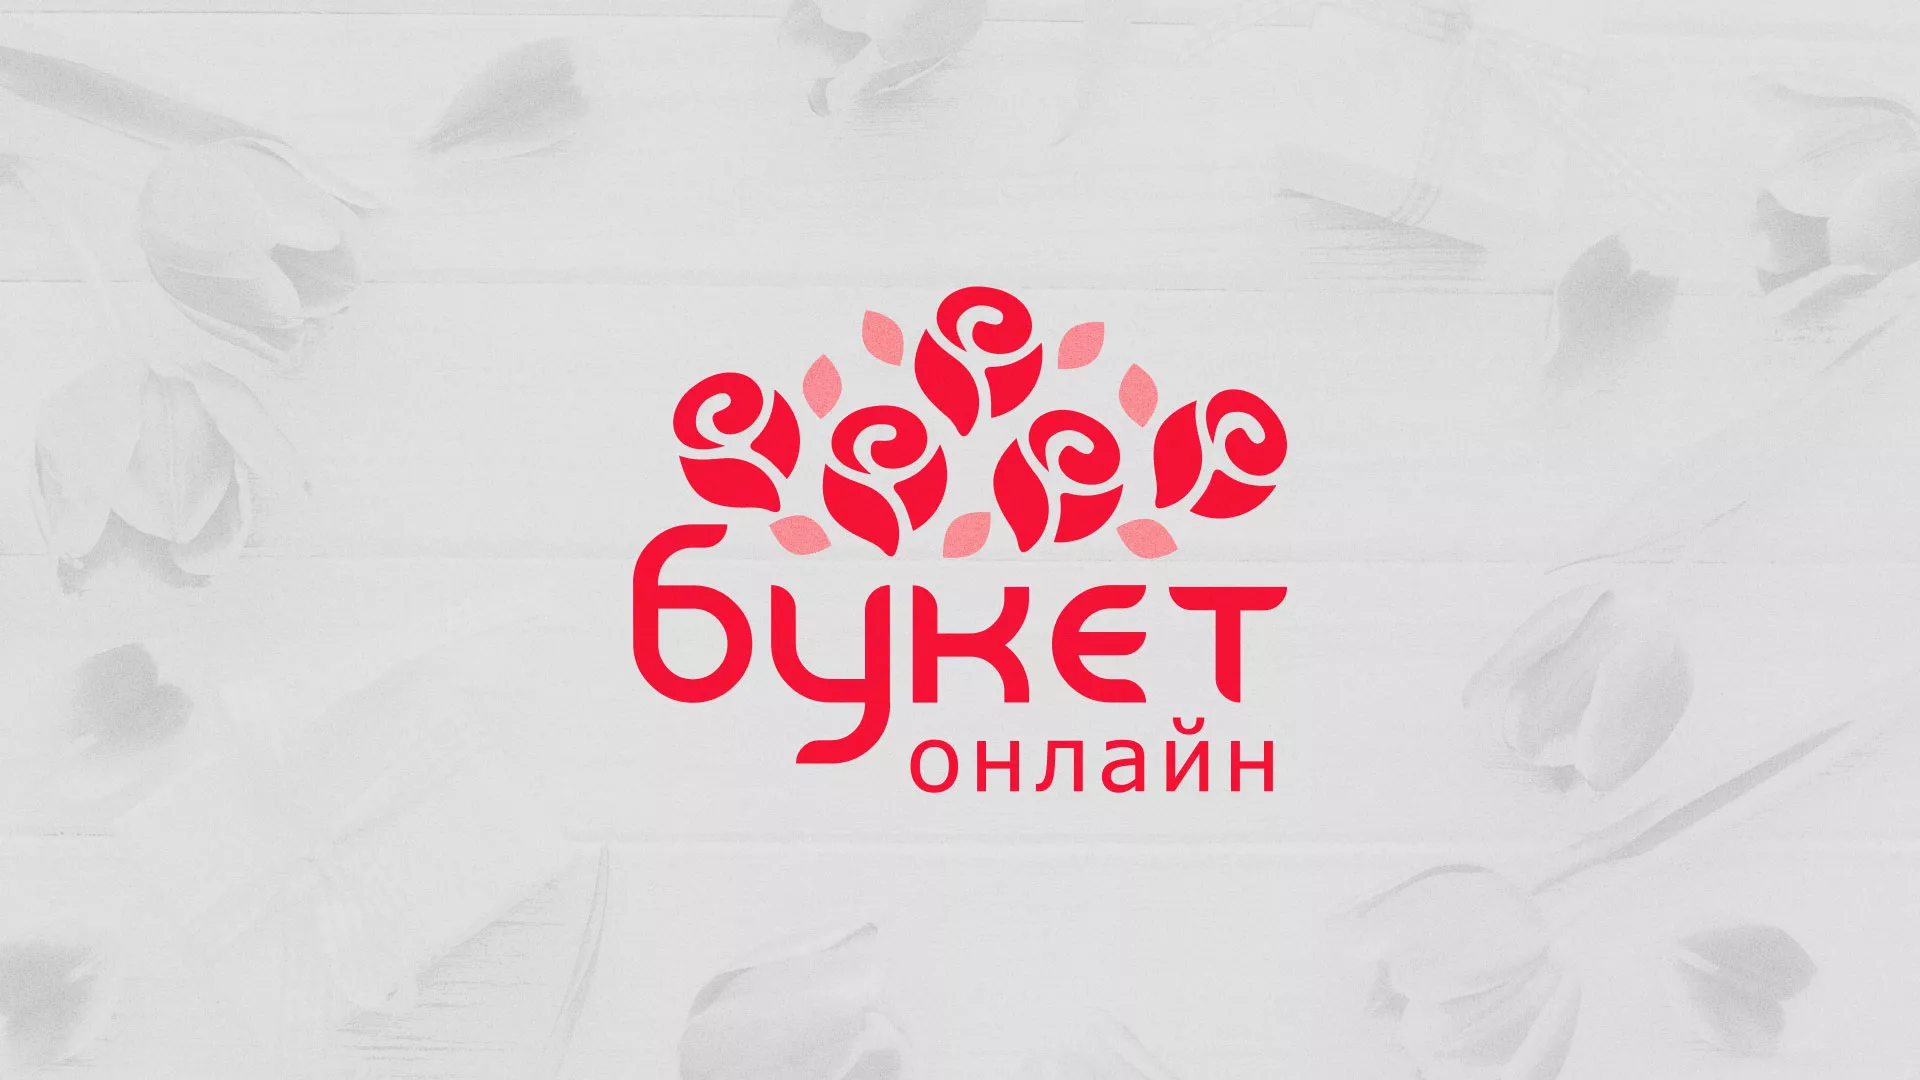 Создание интернет-магазина «Букет-онлайн» по цветам в Волжском